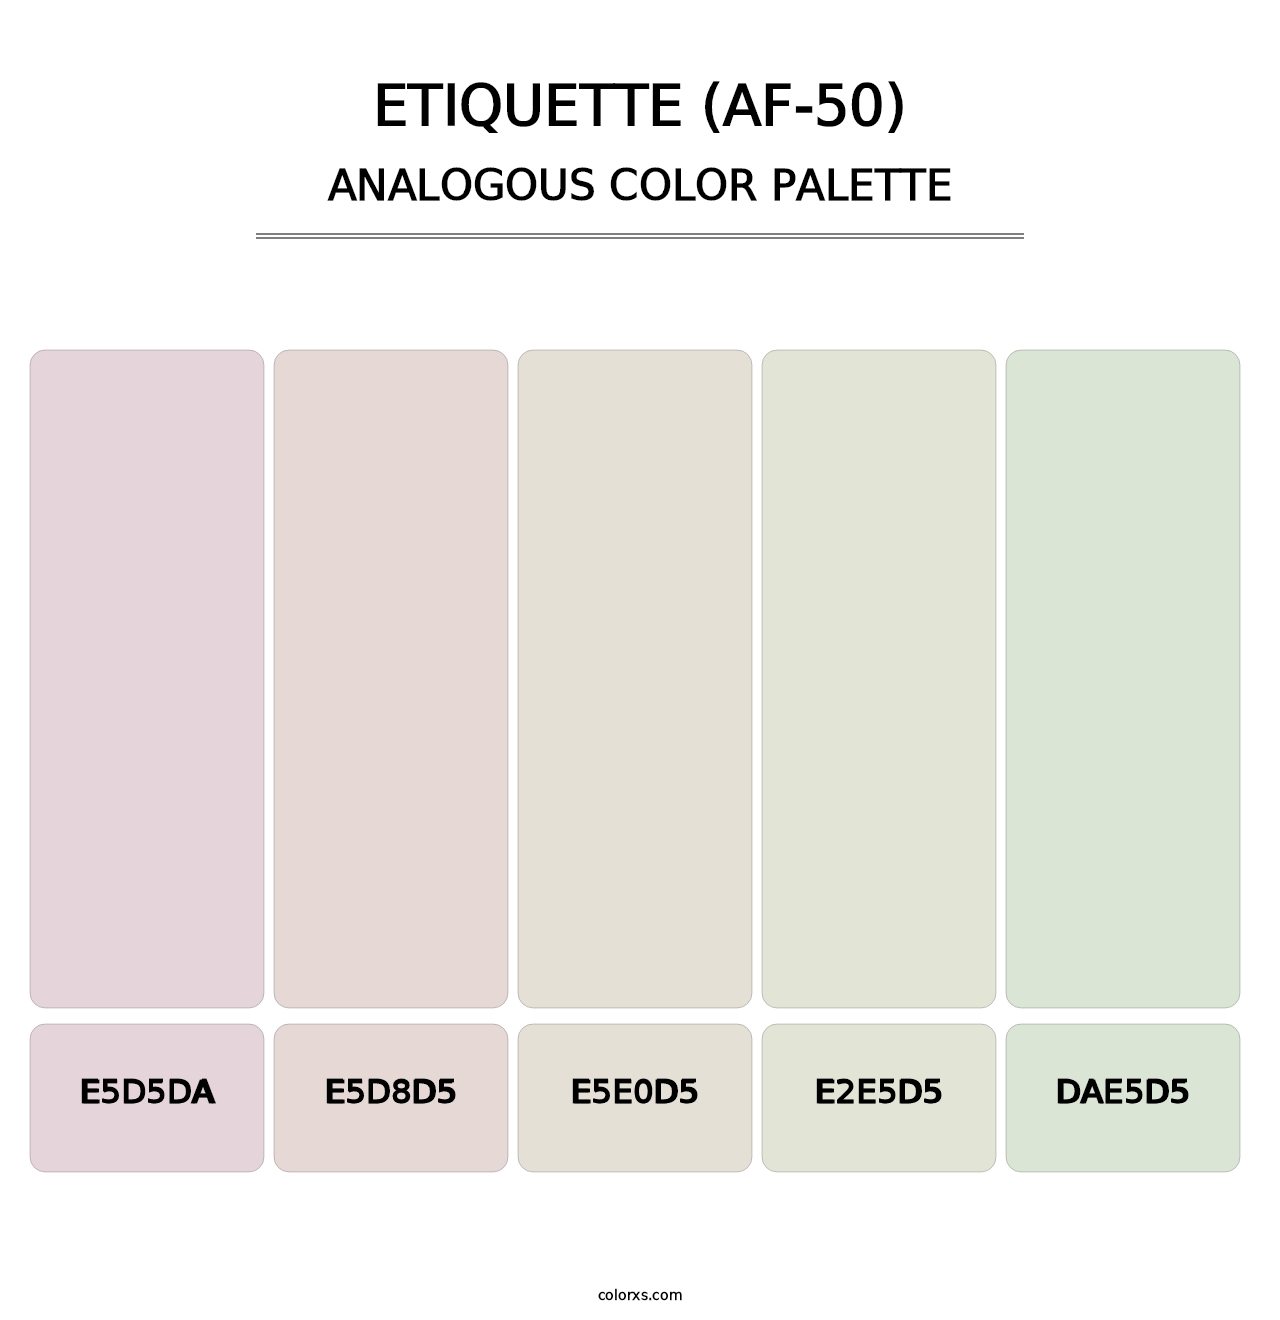 Etiquette (AF-50) - Analogous Color Palette